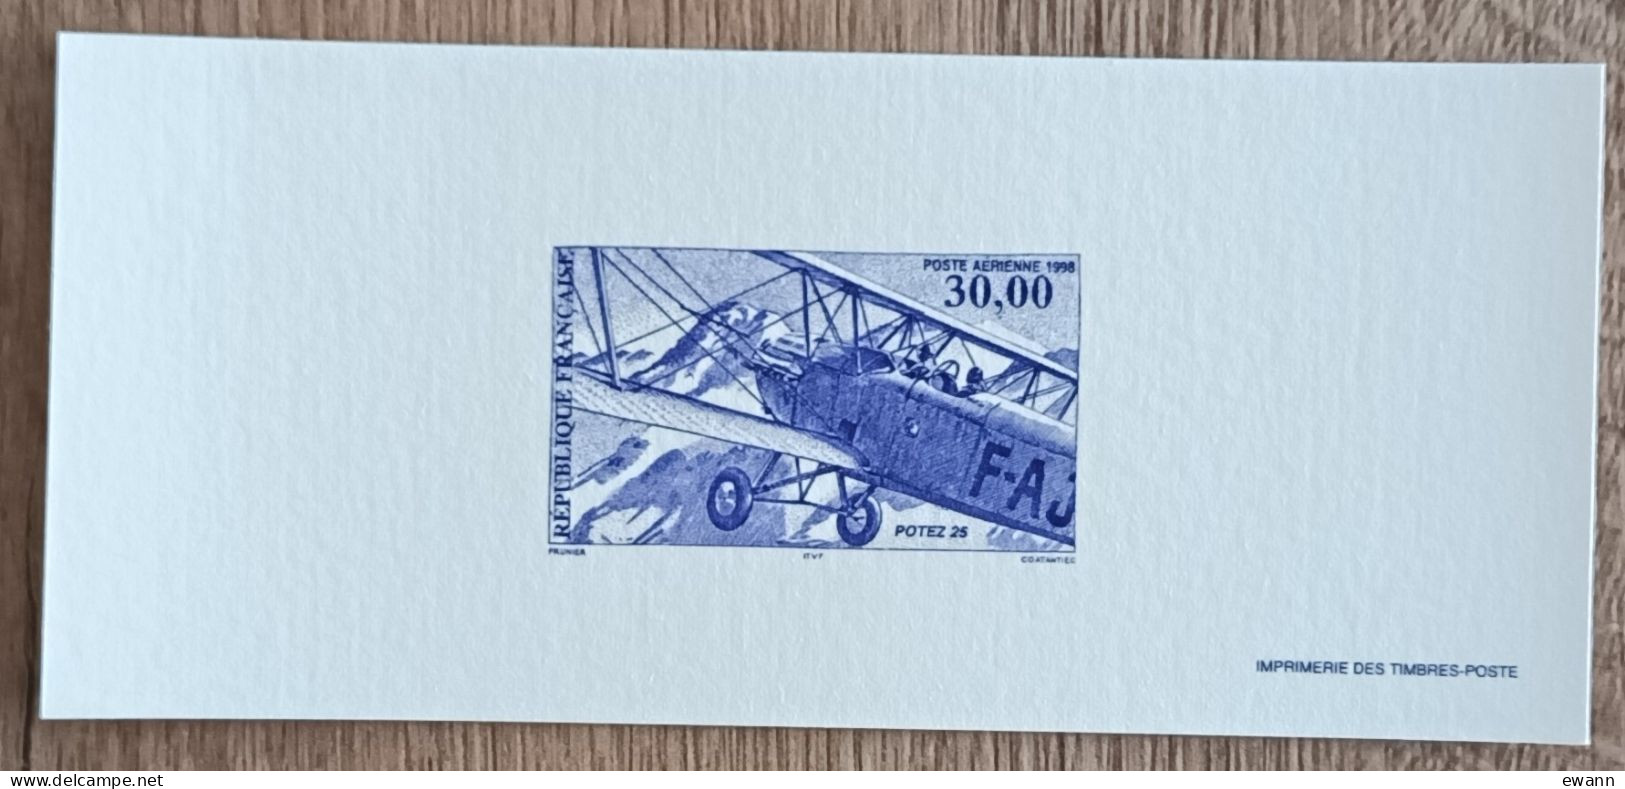 GRAVURE - YT Aérien N°62 - Biplan Potez 25 - 1998 - Documents De La Poste